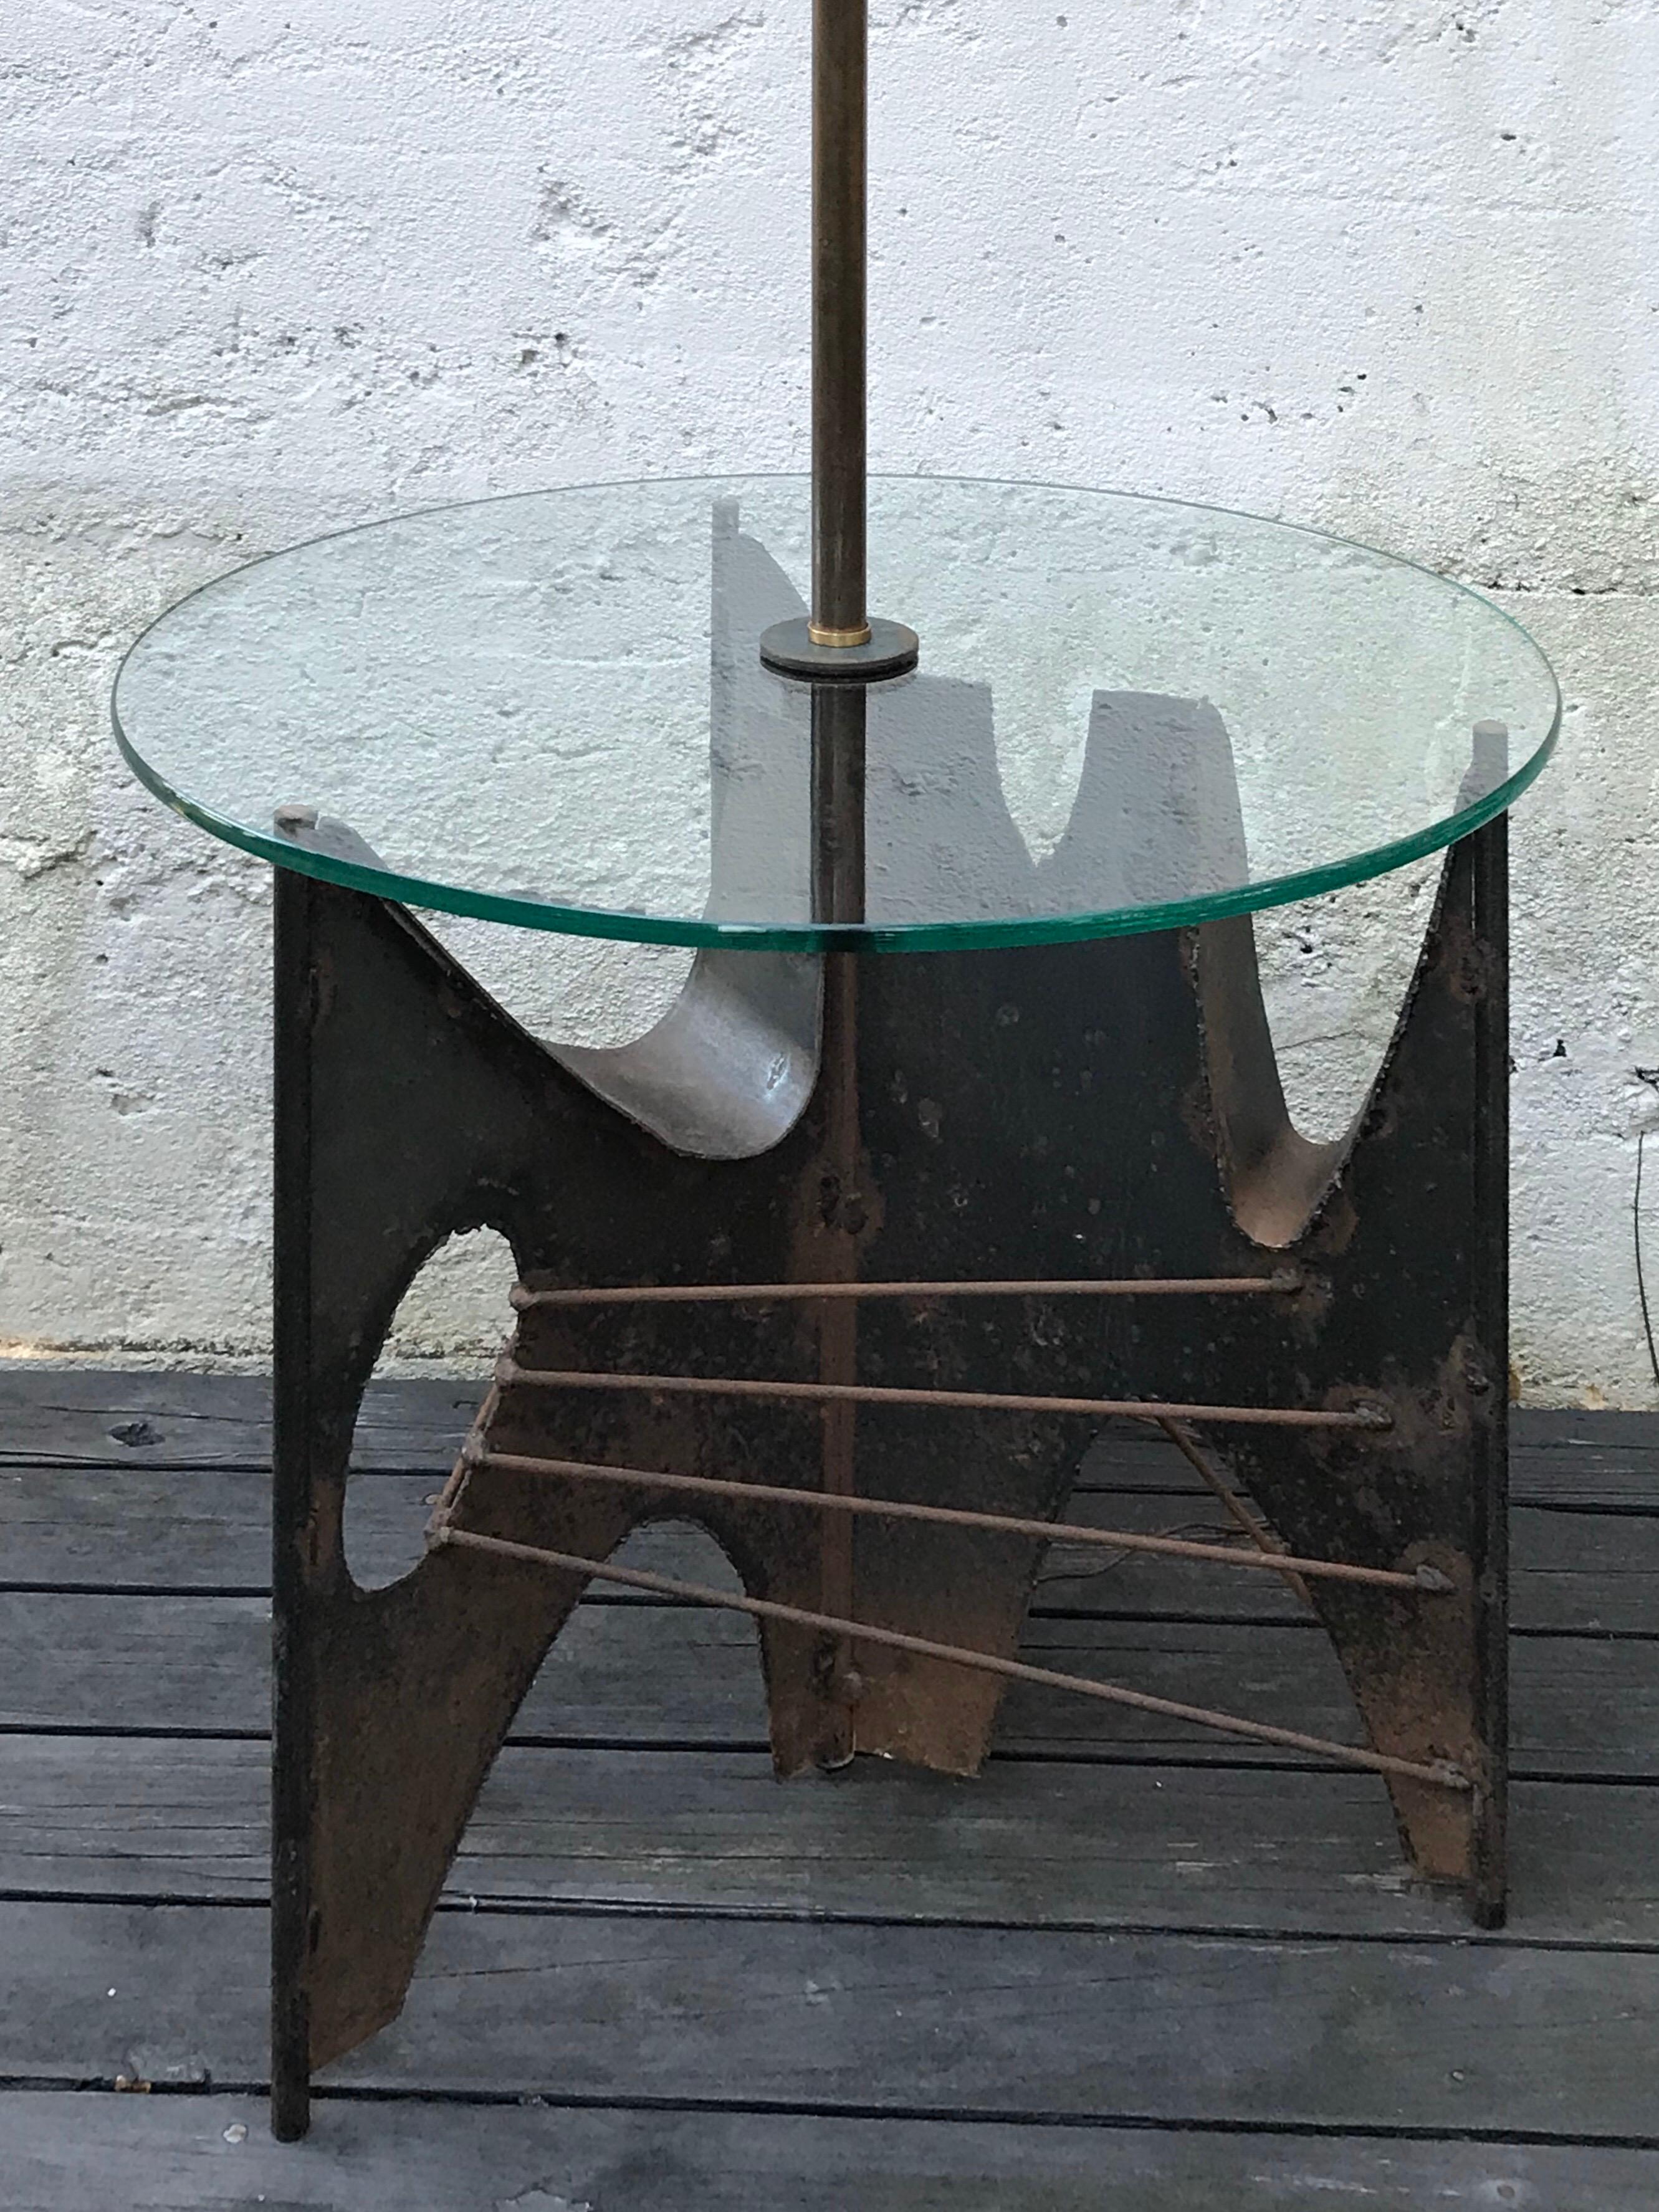 Sehr coole skulpturale Stehleuchte im Brutalismus von Richard Barr für Laurel Lamp Co.  Geschweißtes Metallgestell mit gealterter Patina, runde Tischplatte aus klarem Glas.
Schirm nicht enthalten.